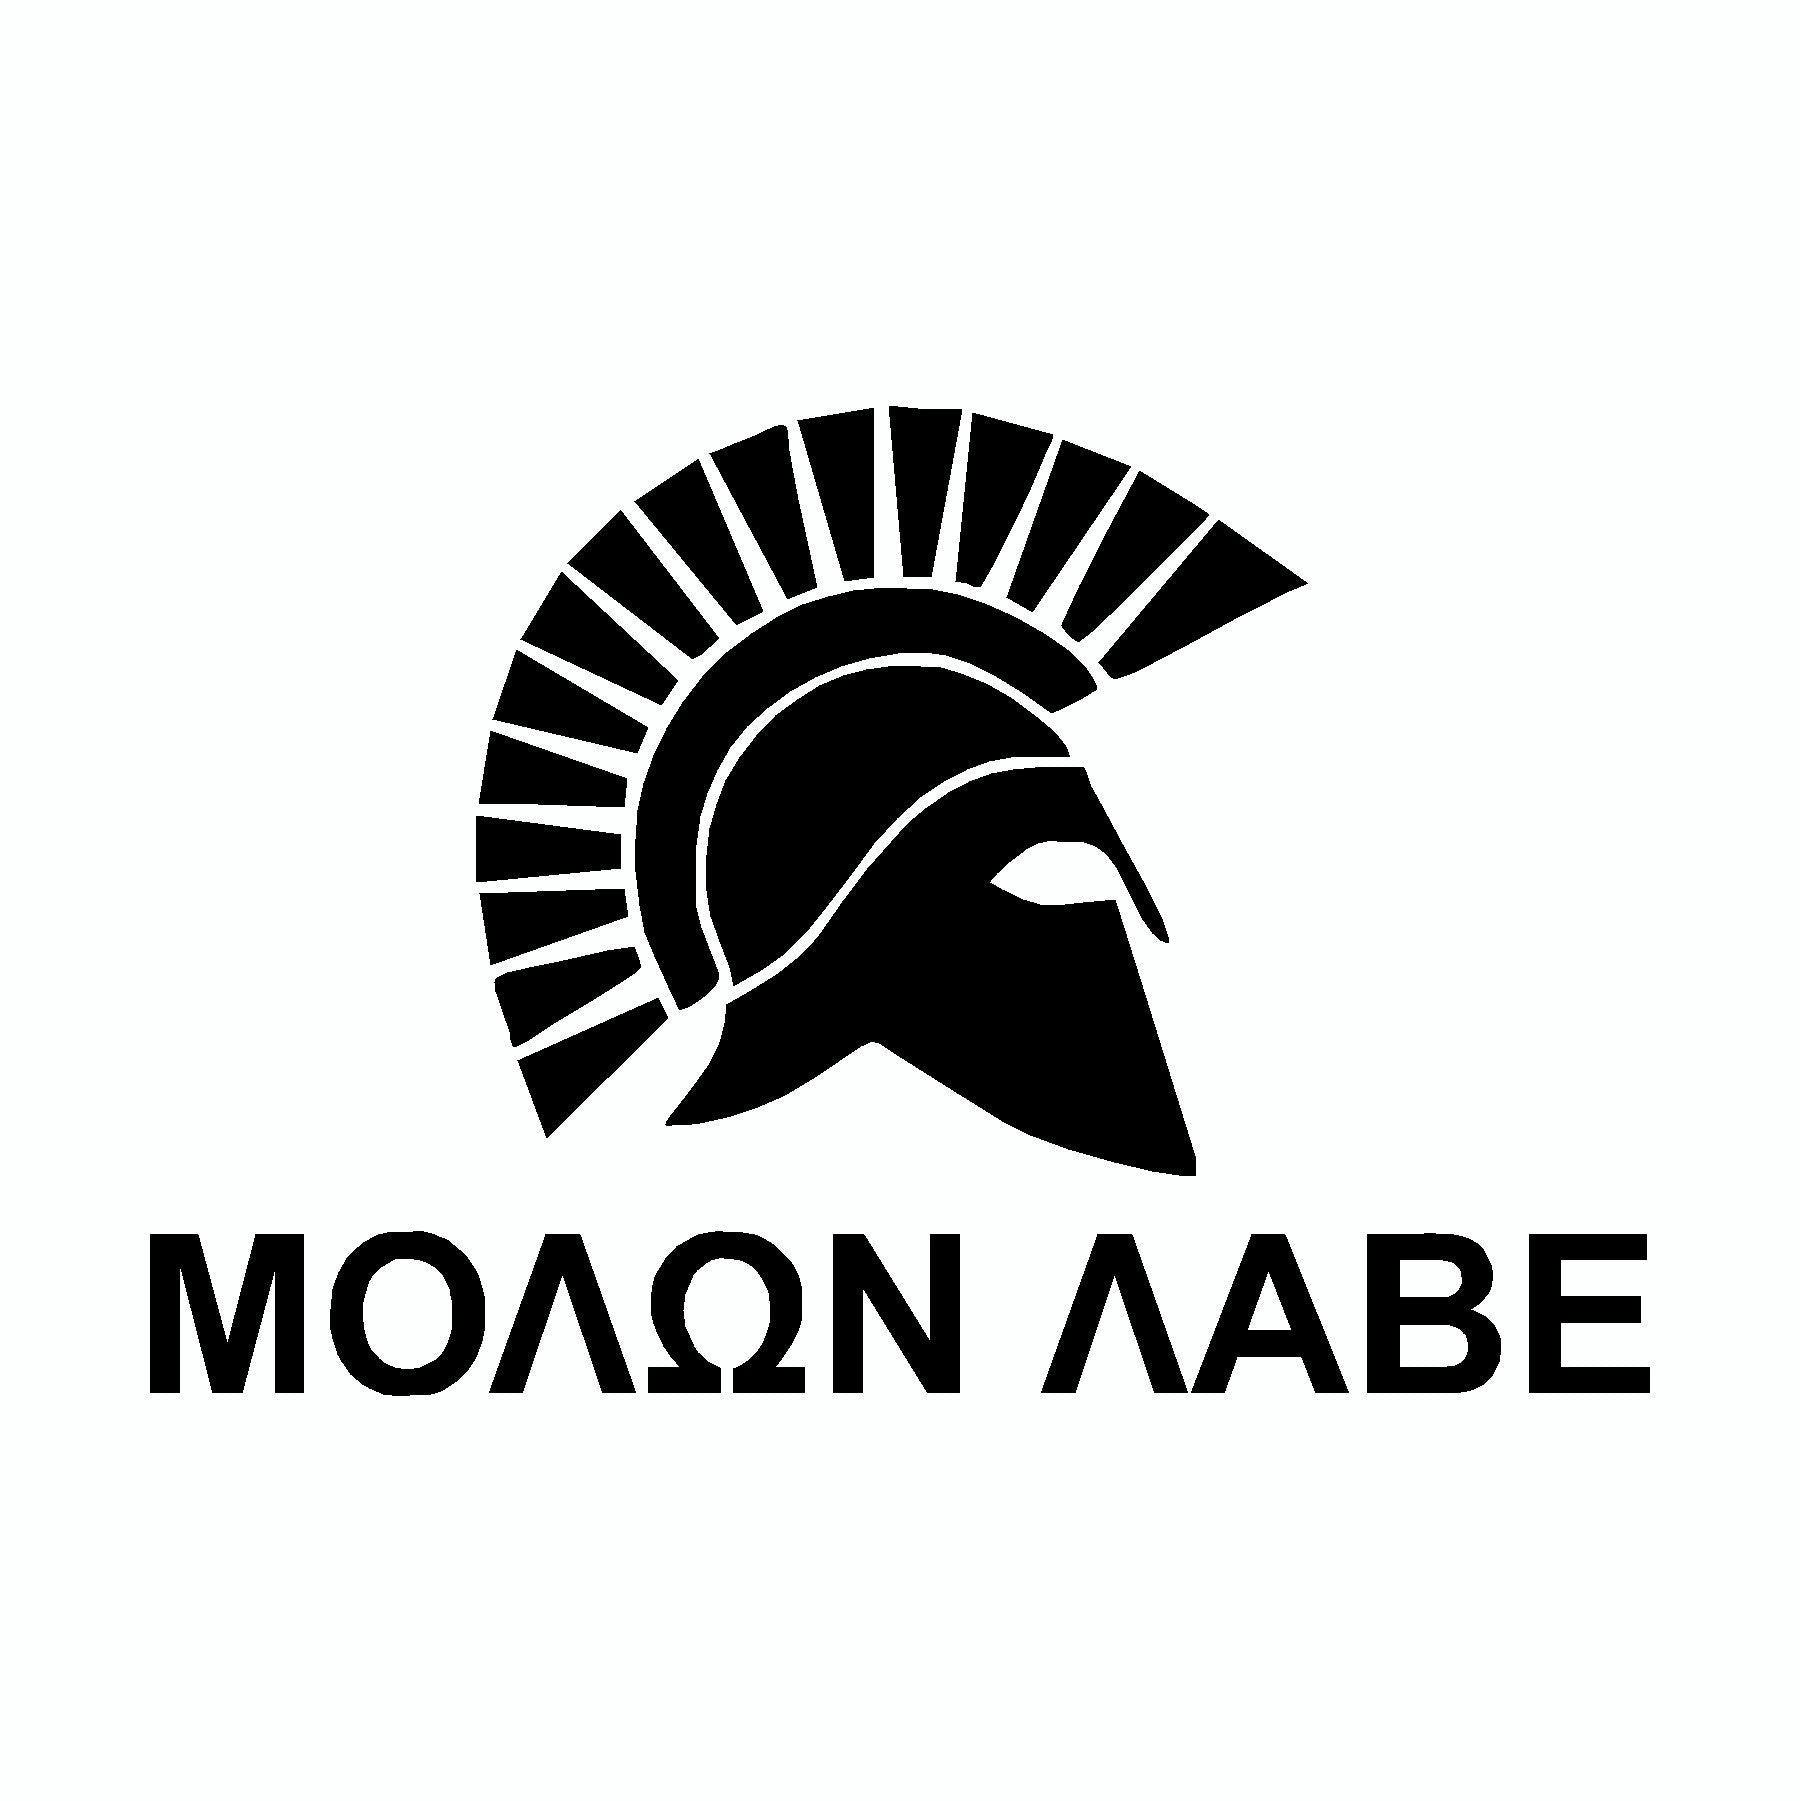 Molon Labe Spartan Helmet Black Come And Take It 2nd Amendment Car Sticker